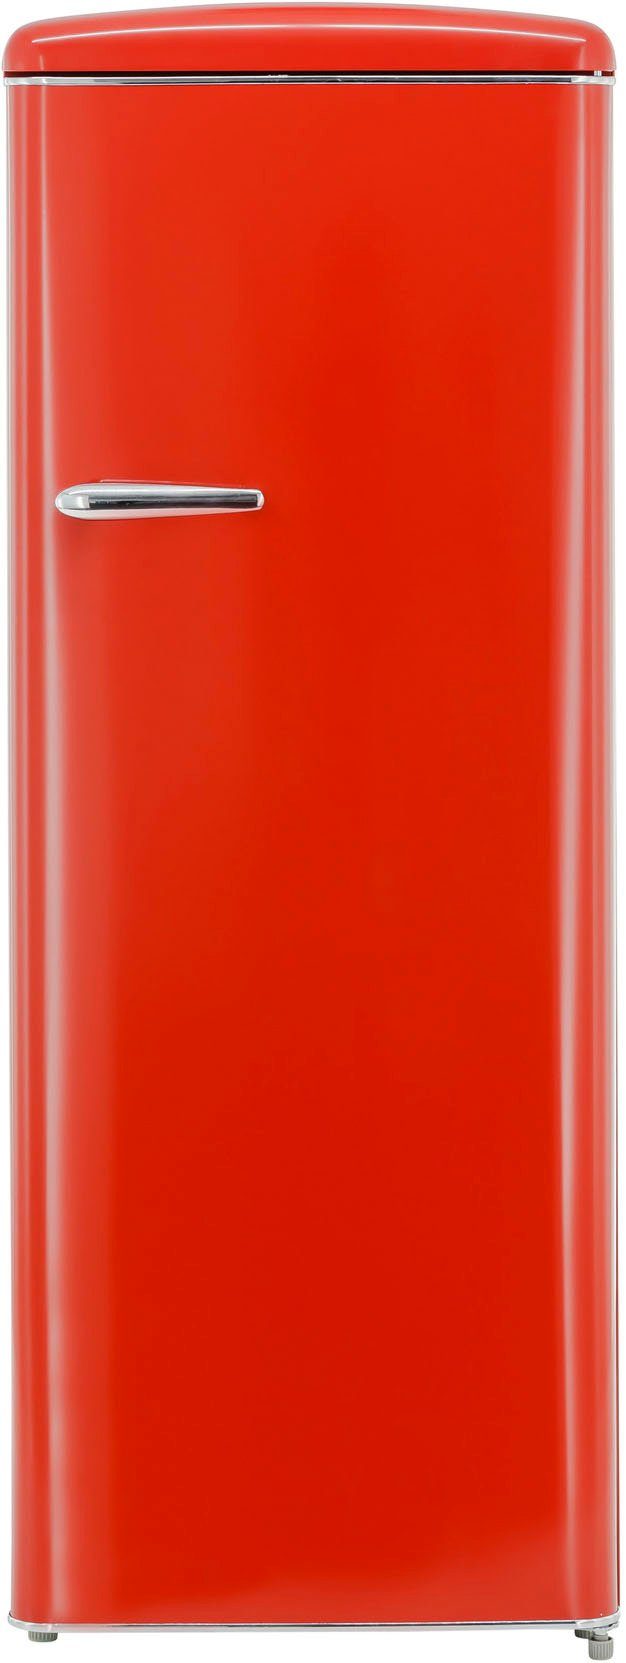 exquisit Kühlschrank RKS325-V-H-160F rot, 144 cm hoch, 55 cm breit, 229 L  Volumen, Türablagen - einfaches Verstauen verschiedener Lebensmittel | Kühl-Gefrierkombinationen